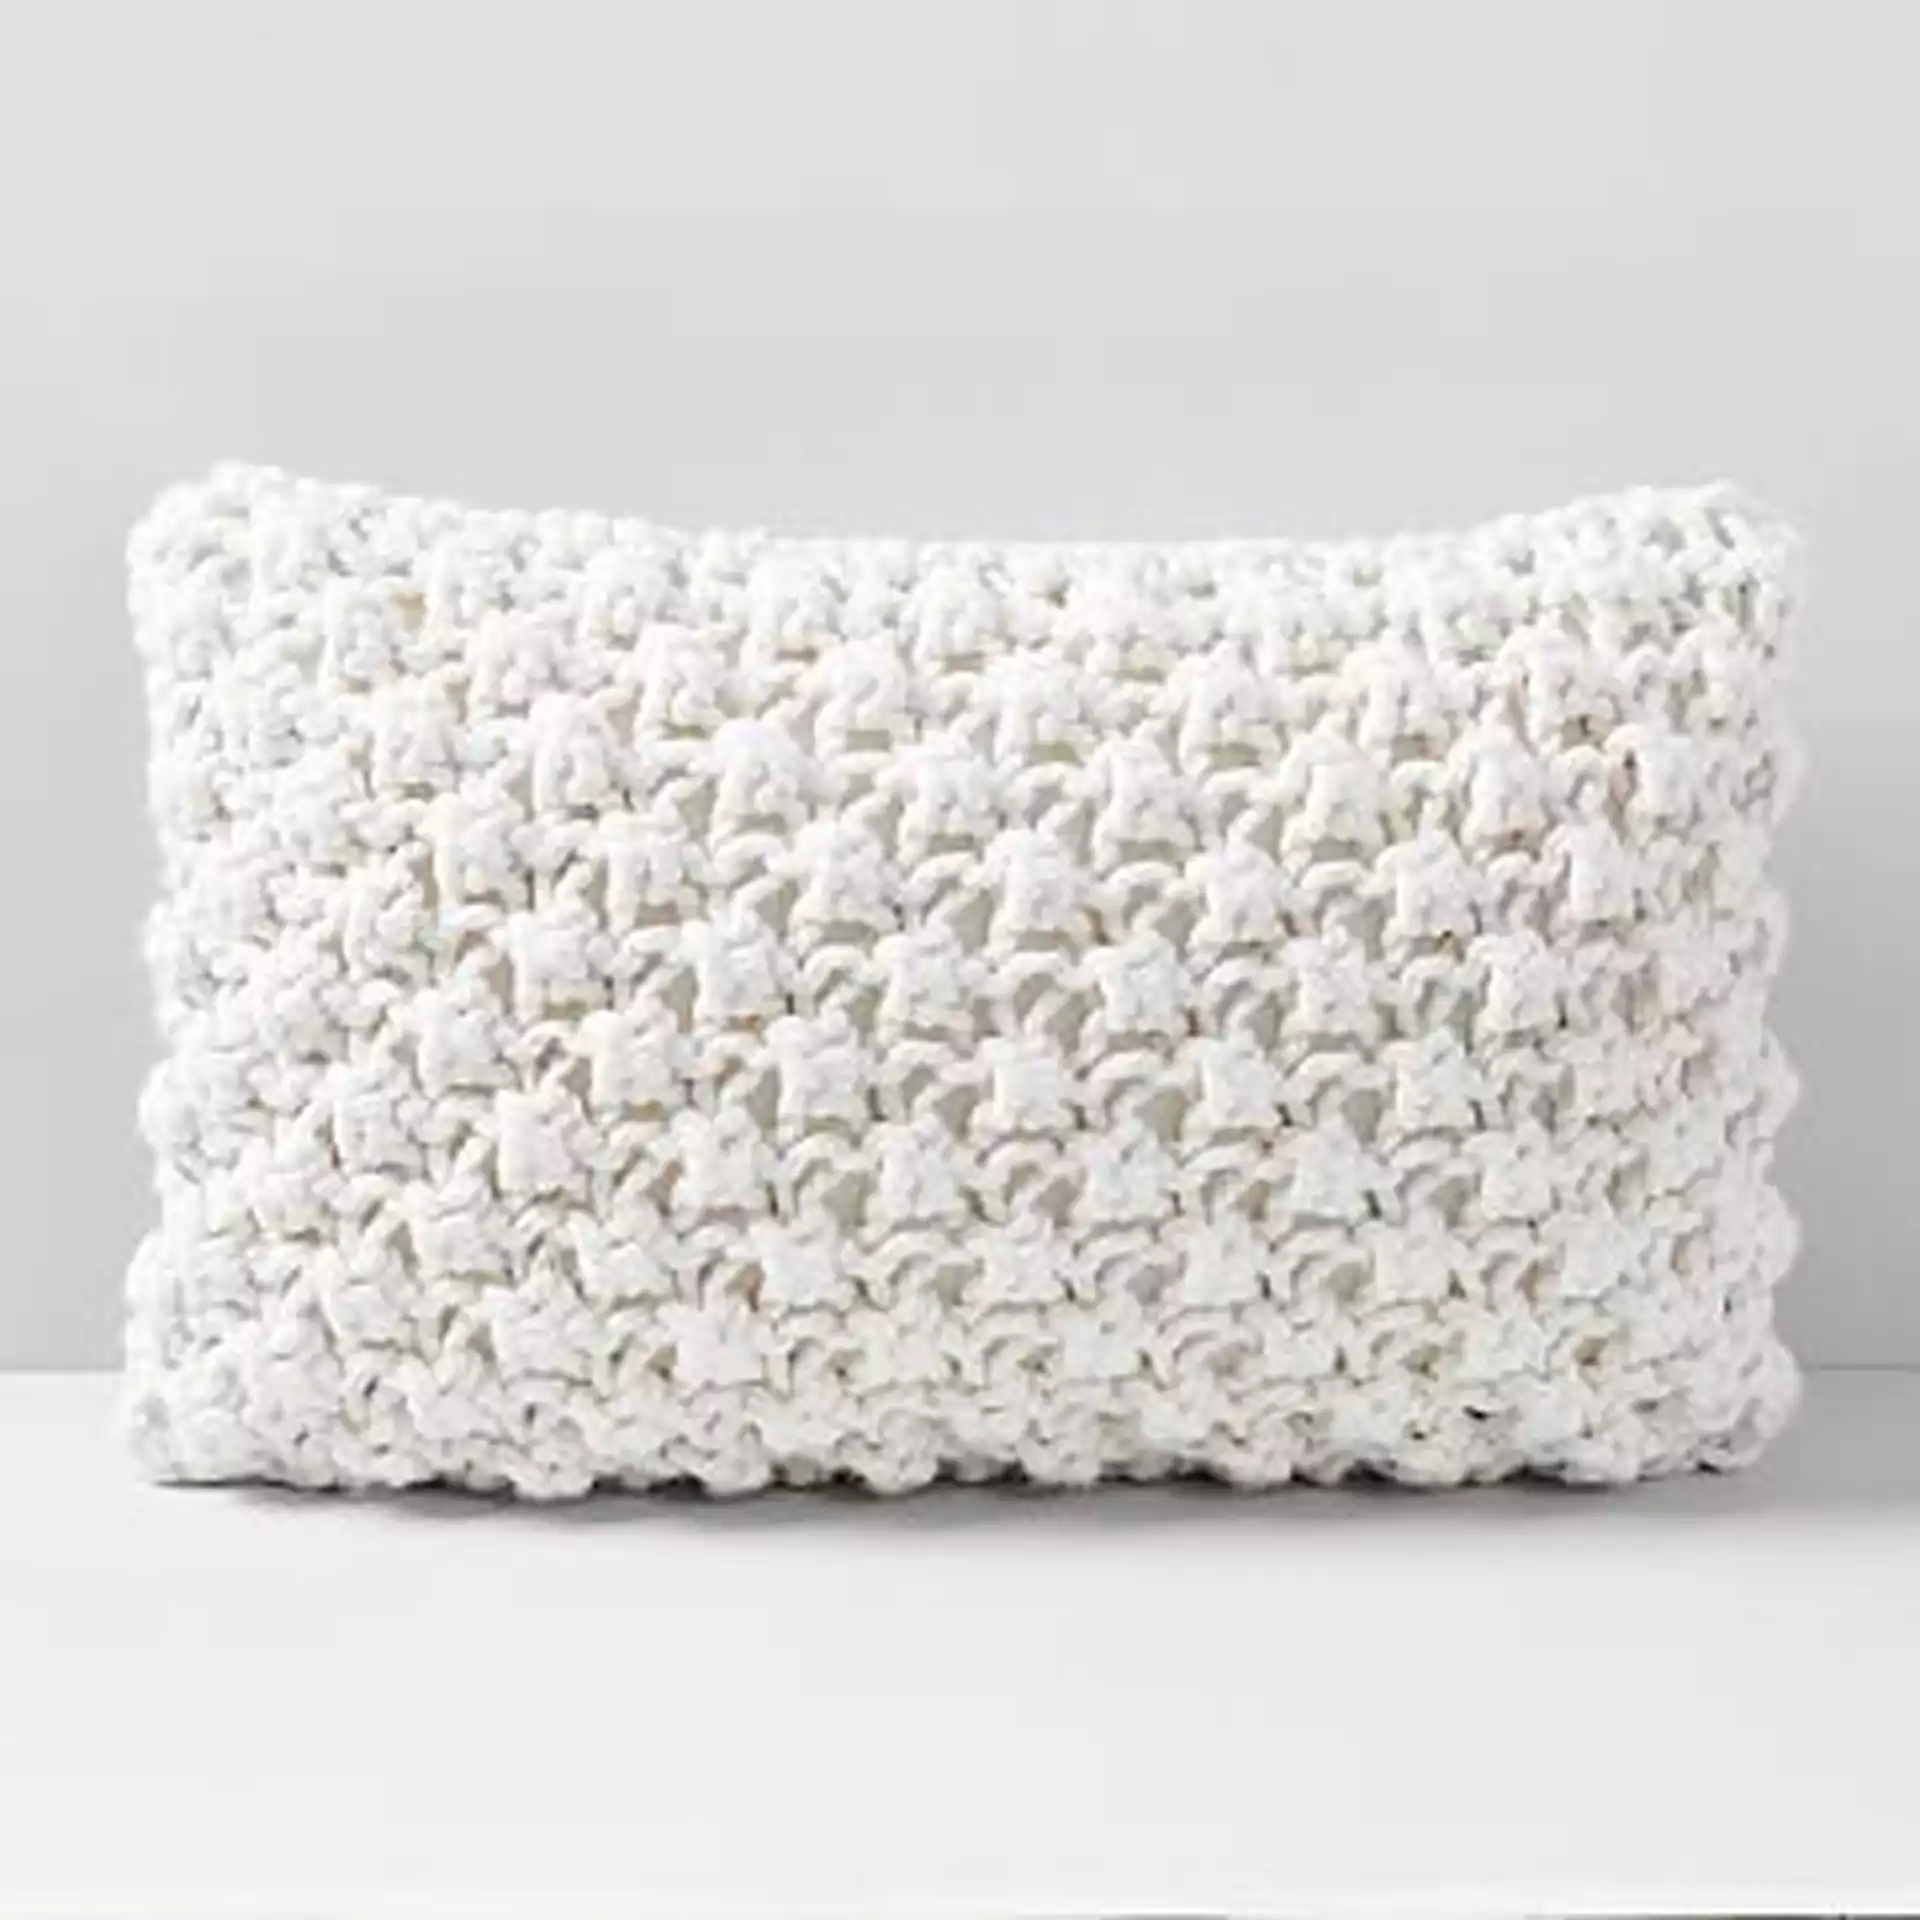 Bobble Knit Pillow Case, Natural, 12"x21"